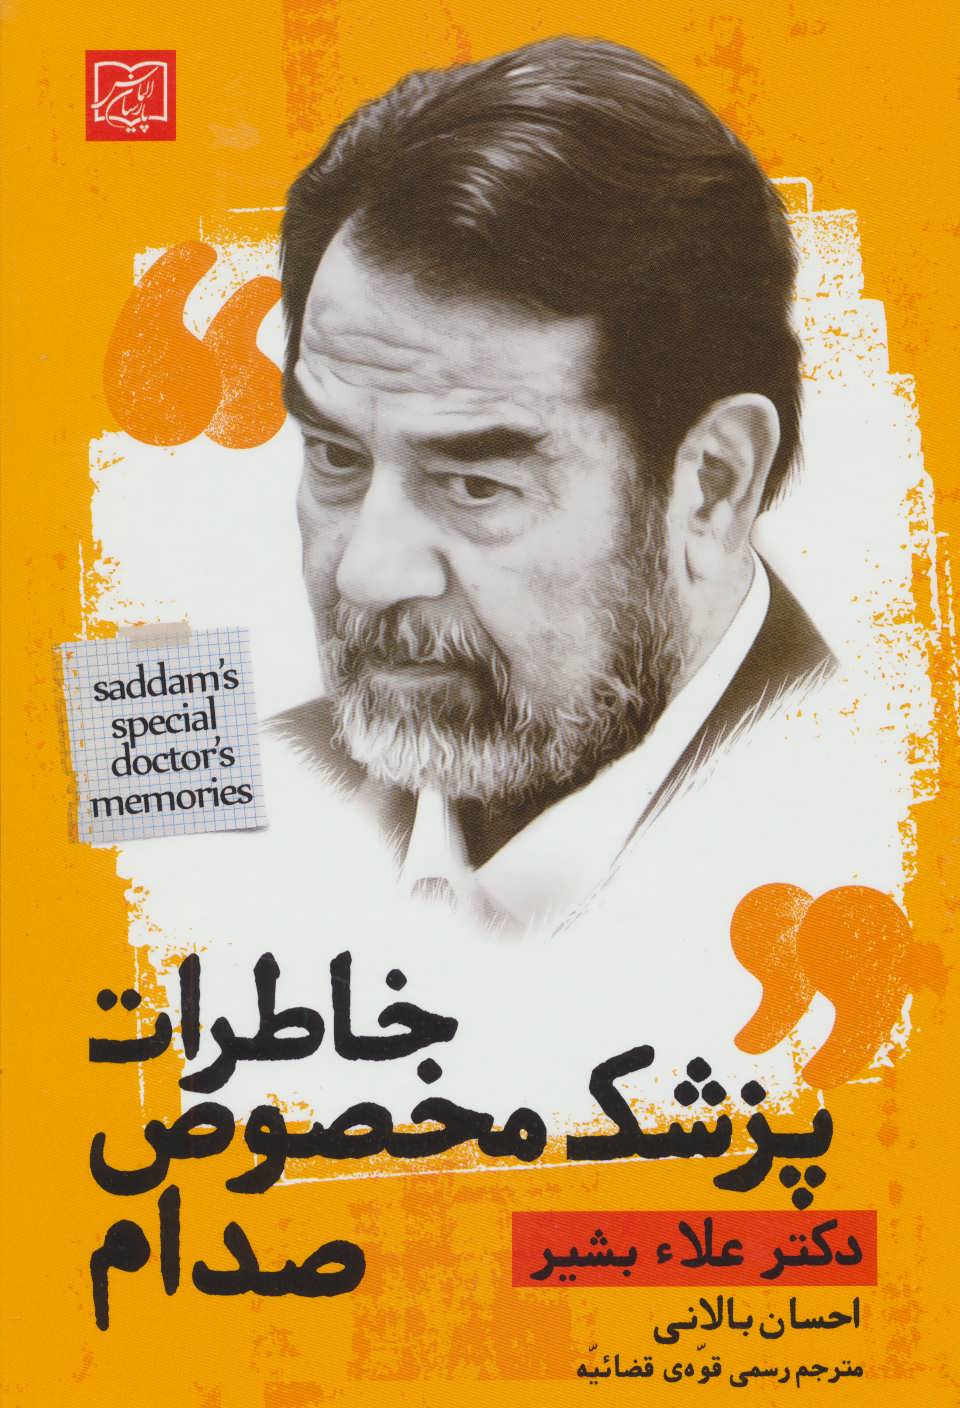  کتاب خاطرات پزشک مخصوص صدام